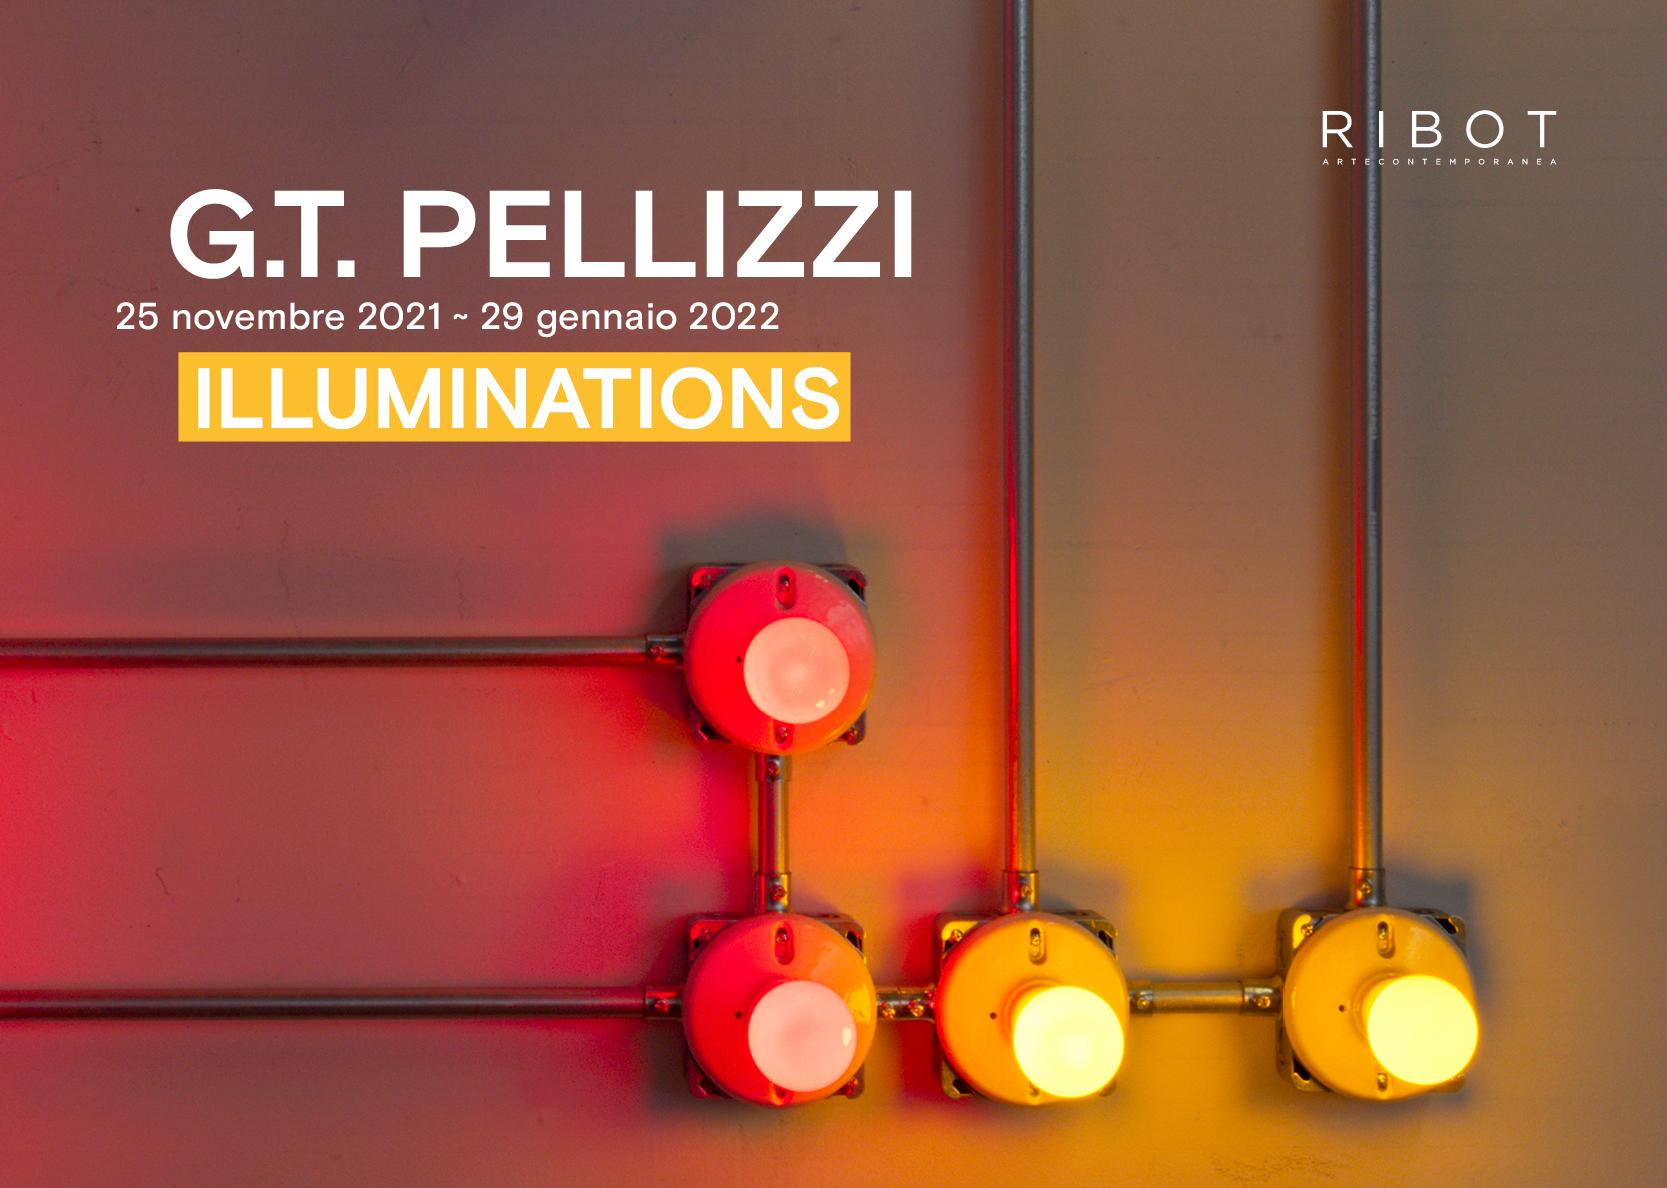 G.T. PELLIZZI - ILLUMINATIONS